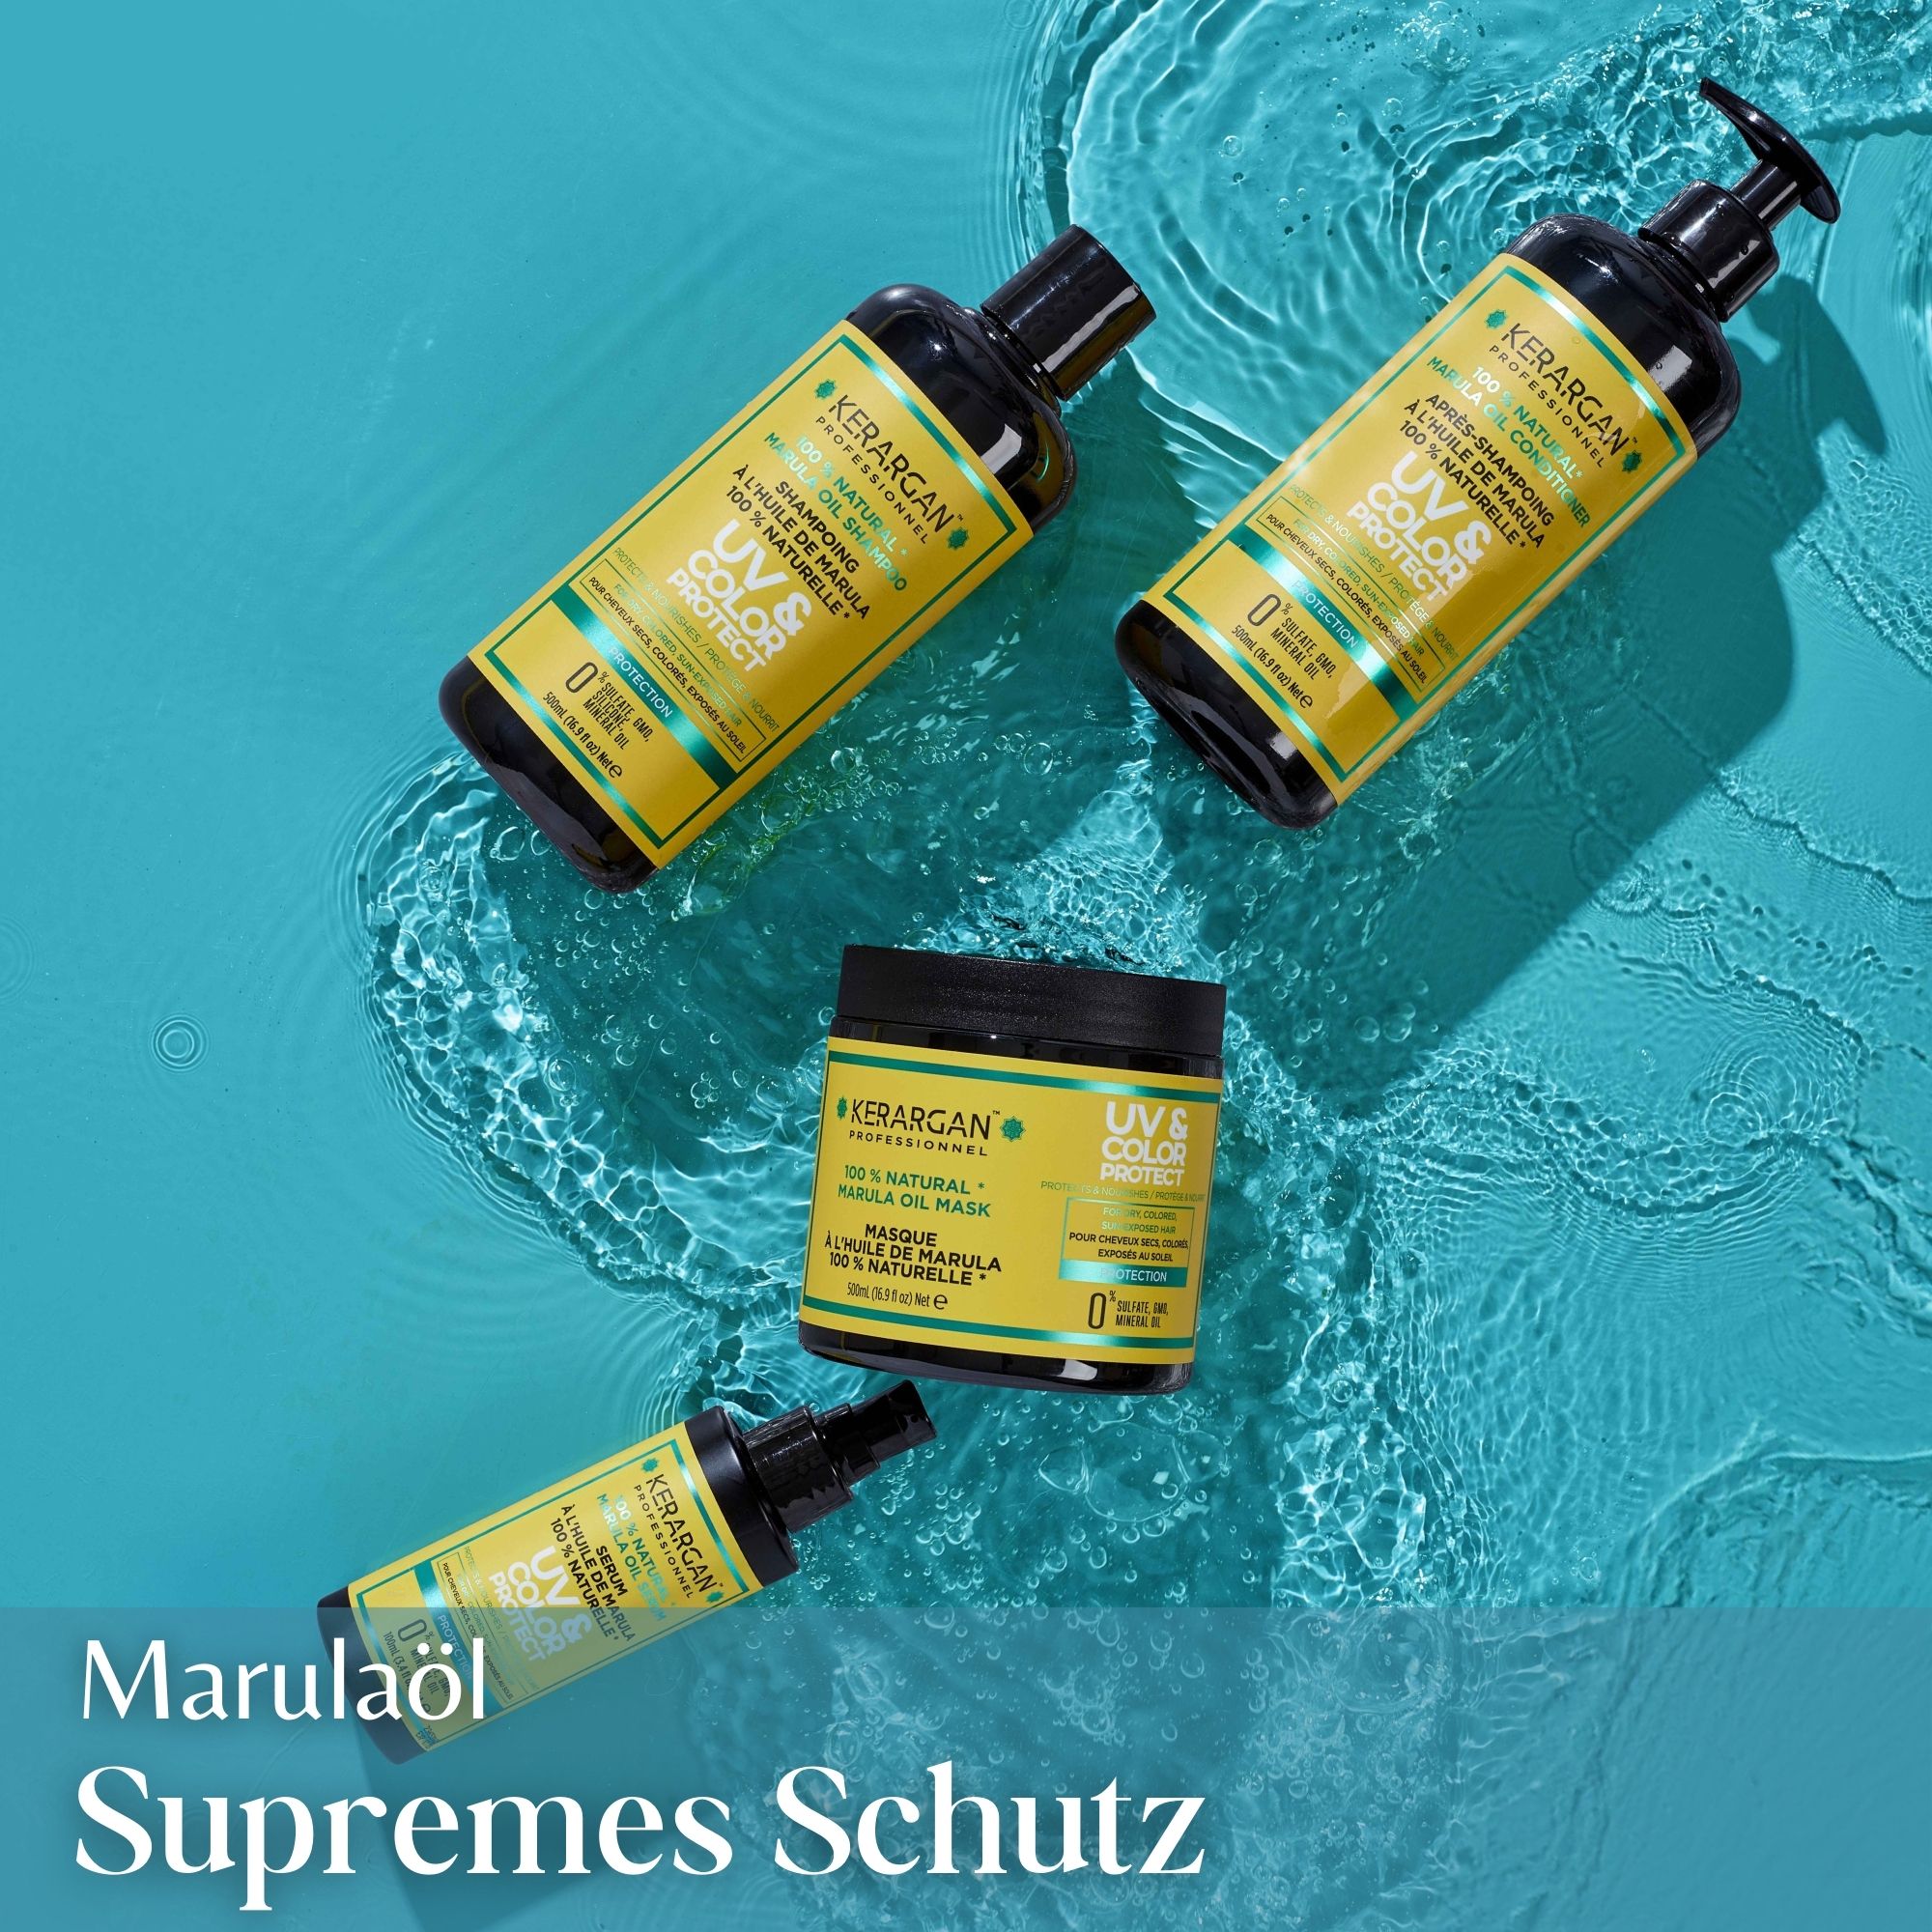 Kerargan - UV & Farbschutz Shampoo mit Marulaöl